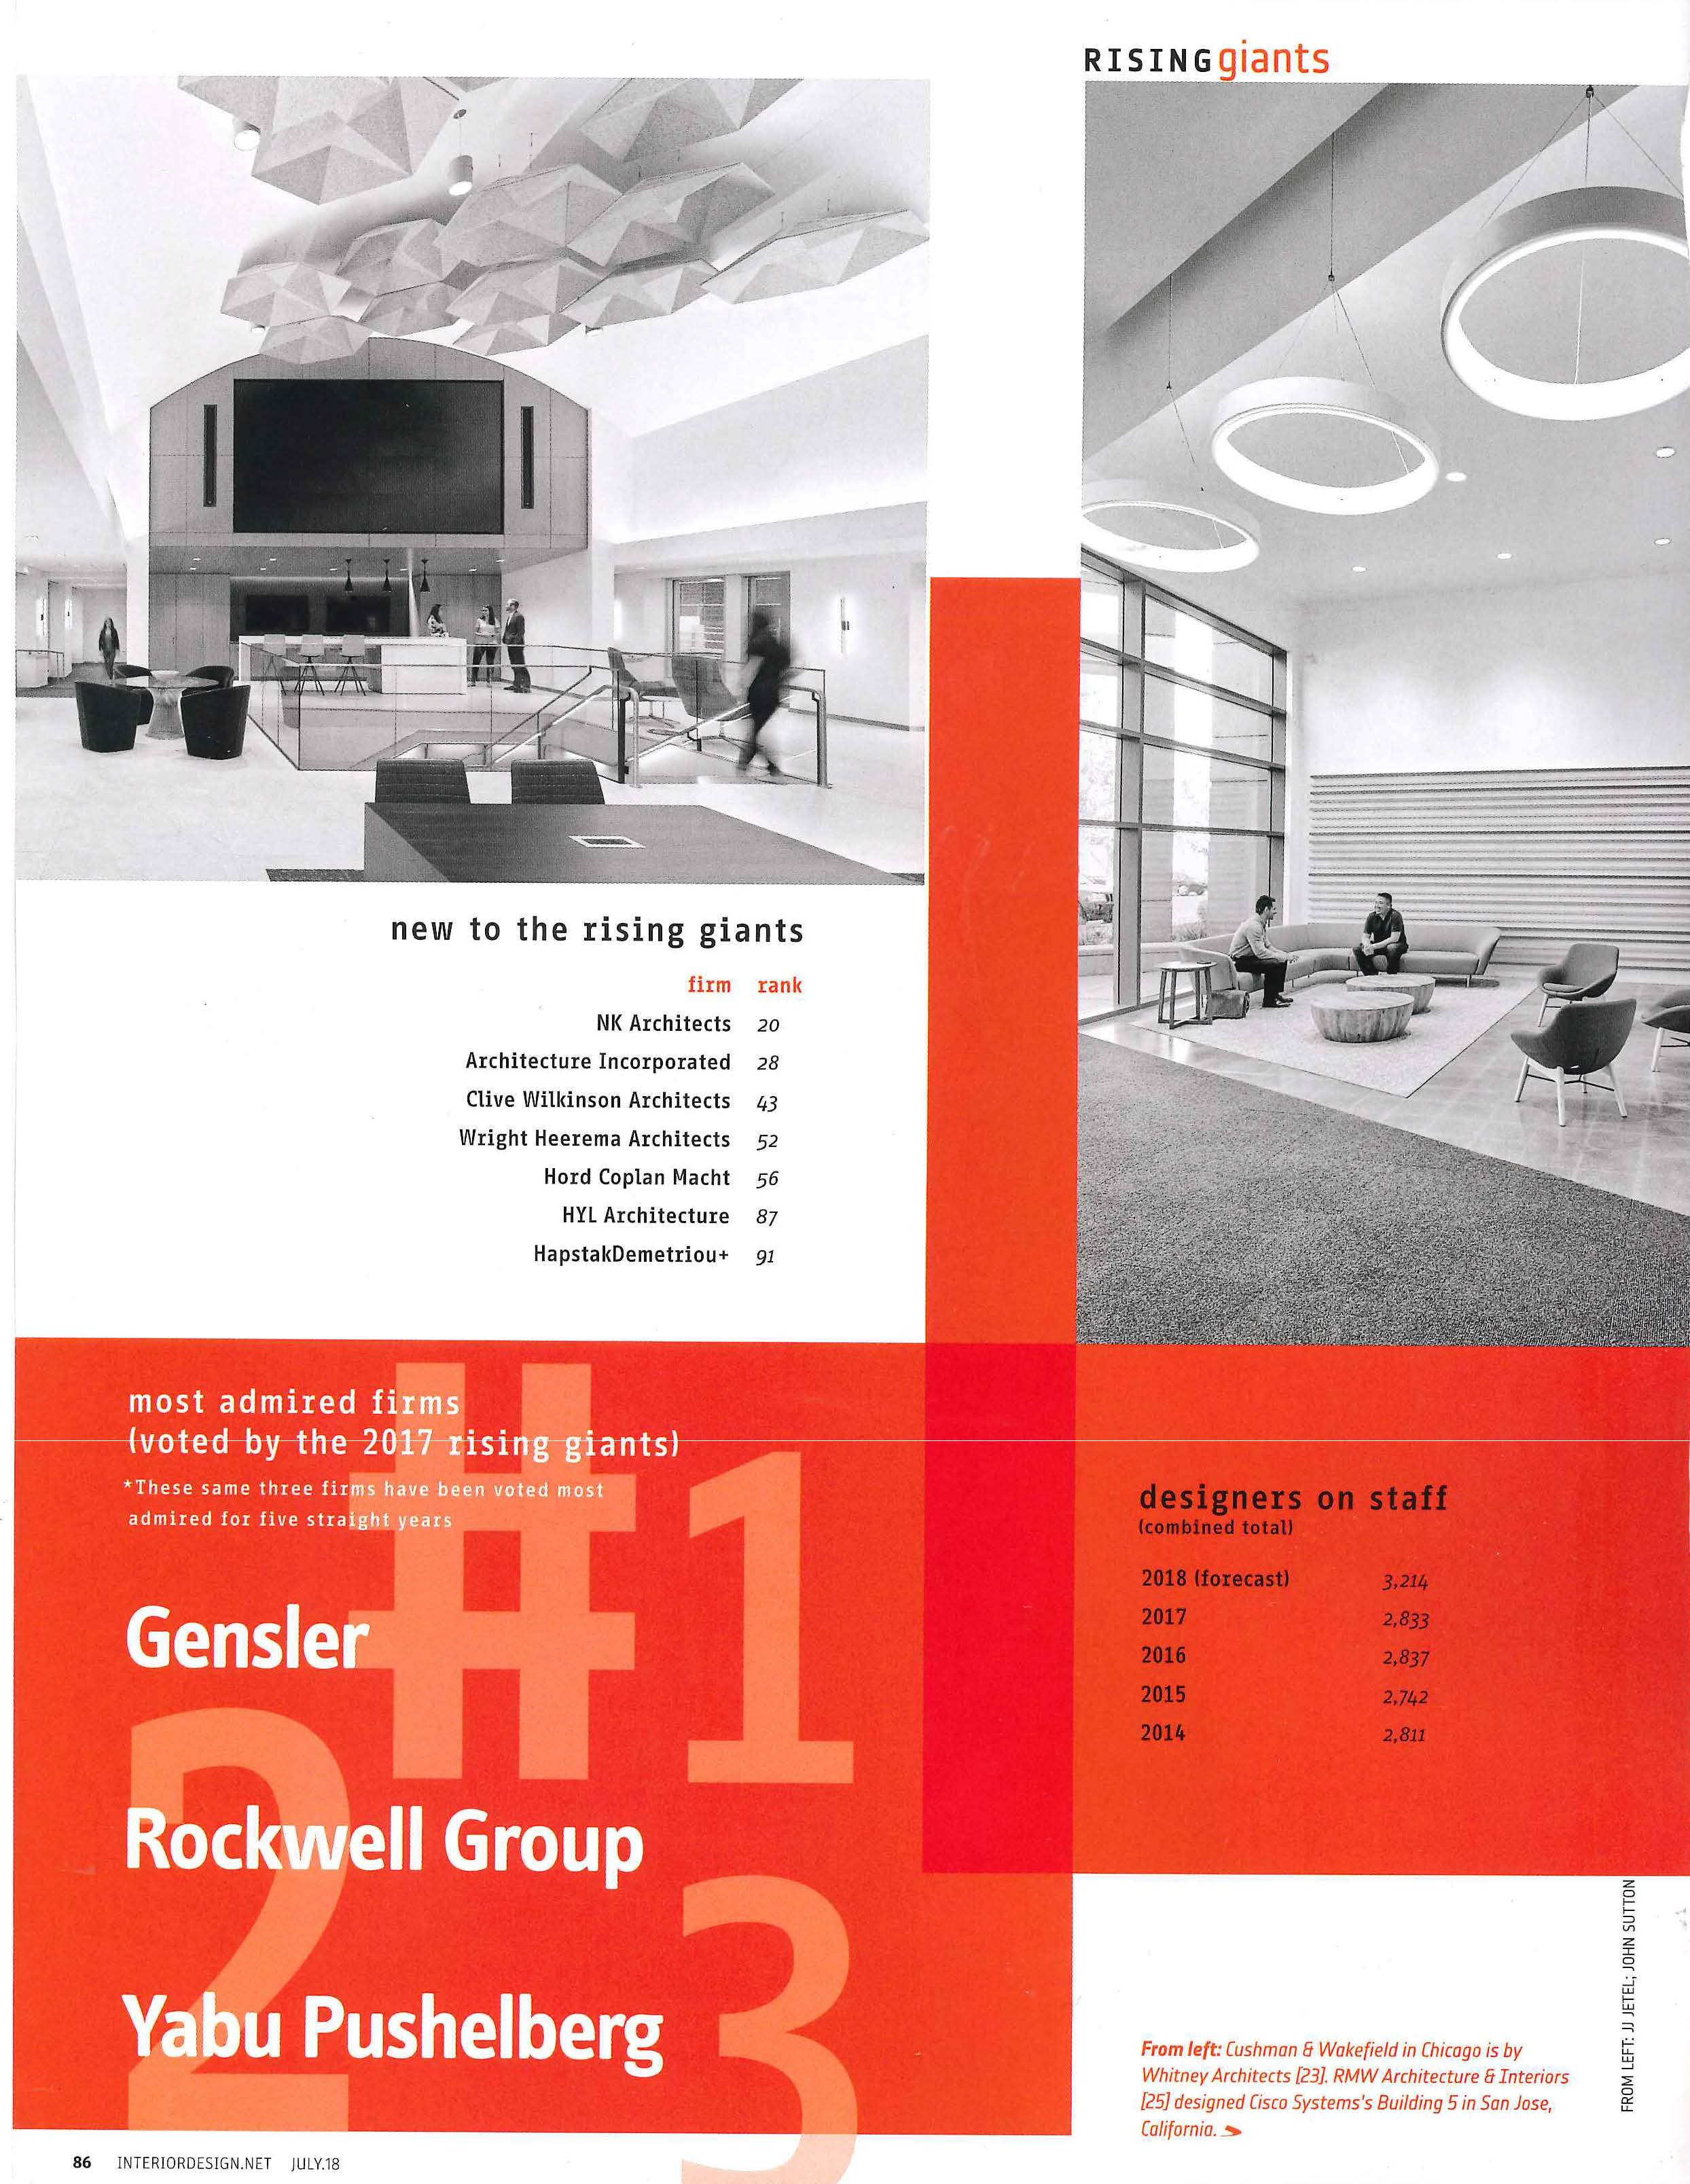 Interior Design magazine ranked J Banks Design Group #48 in 100 Rising Giants list for 2018